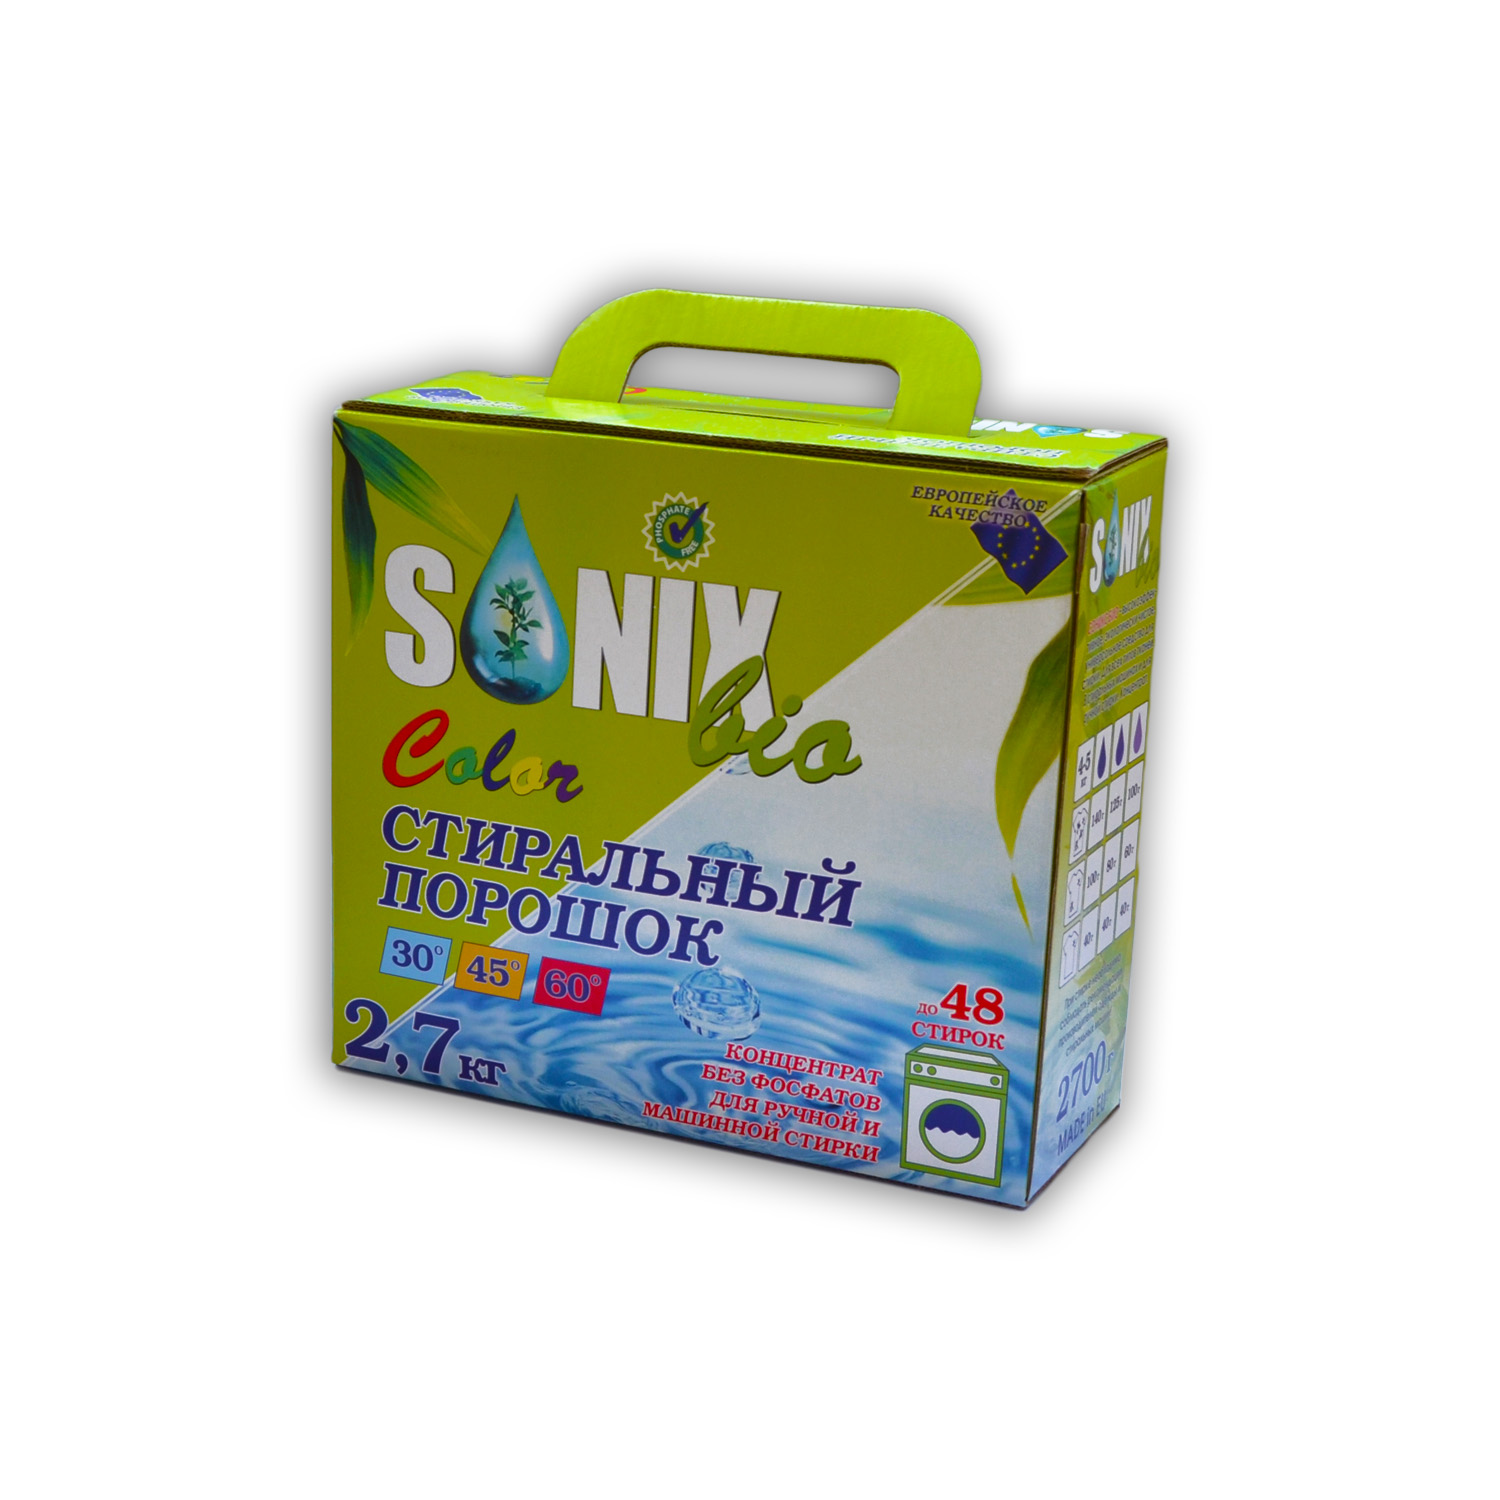 Sonix Bio Универсальный стиральный порошок с формулой сохранения цвета, для цветного белья купить оптом